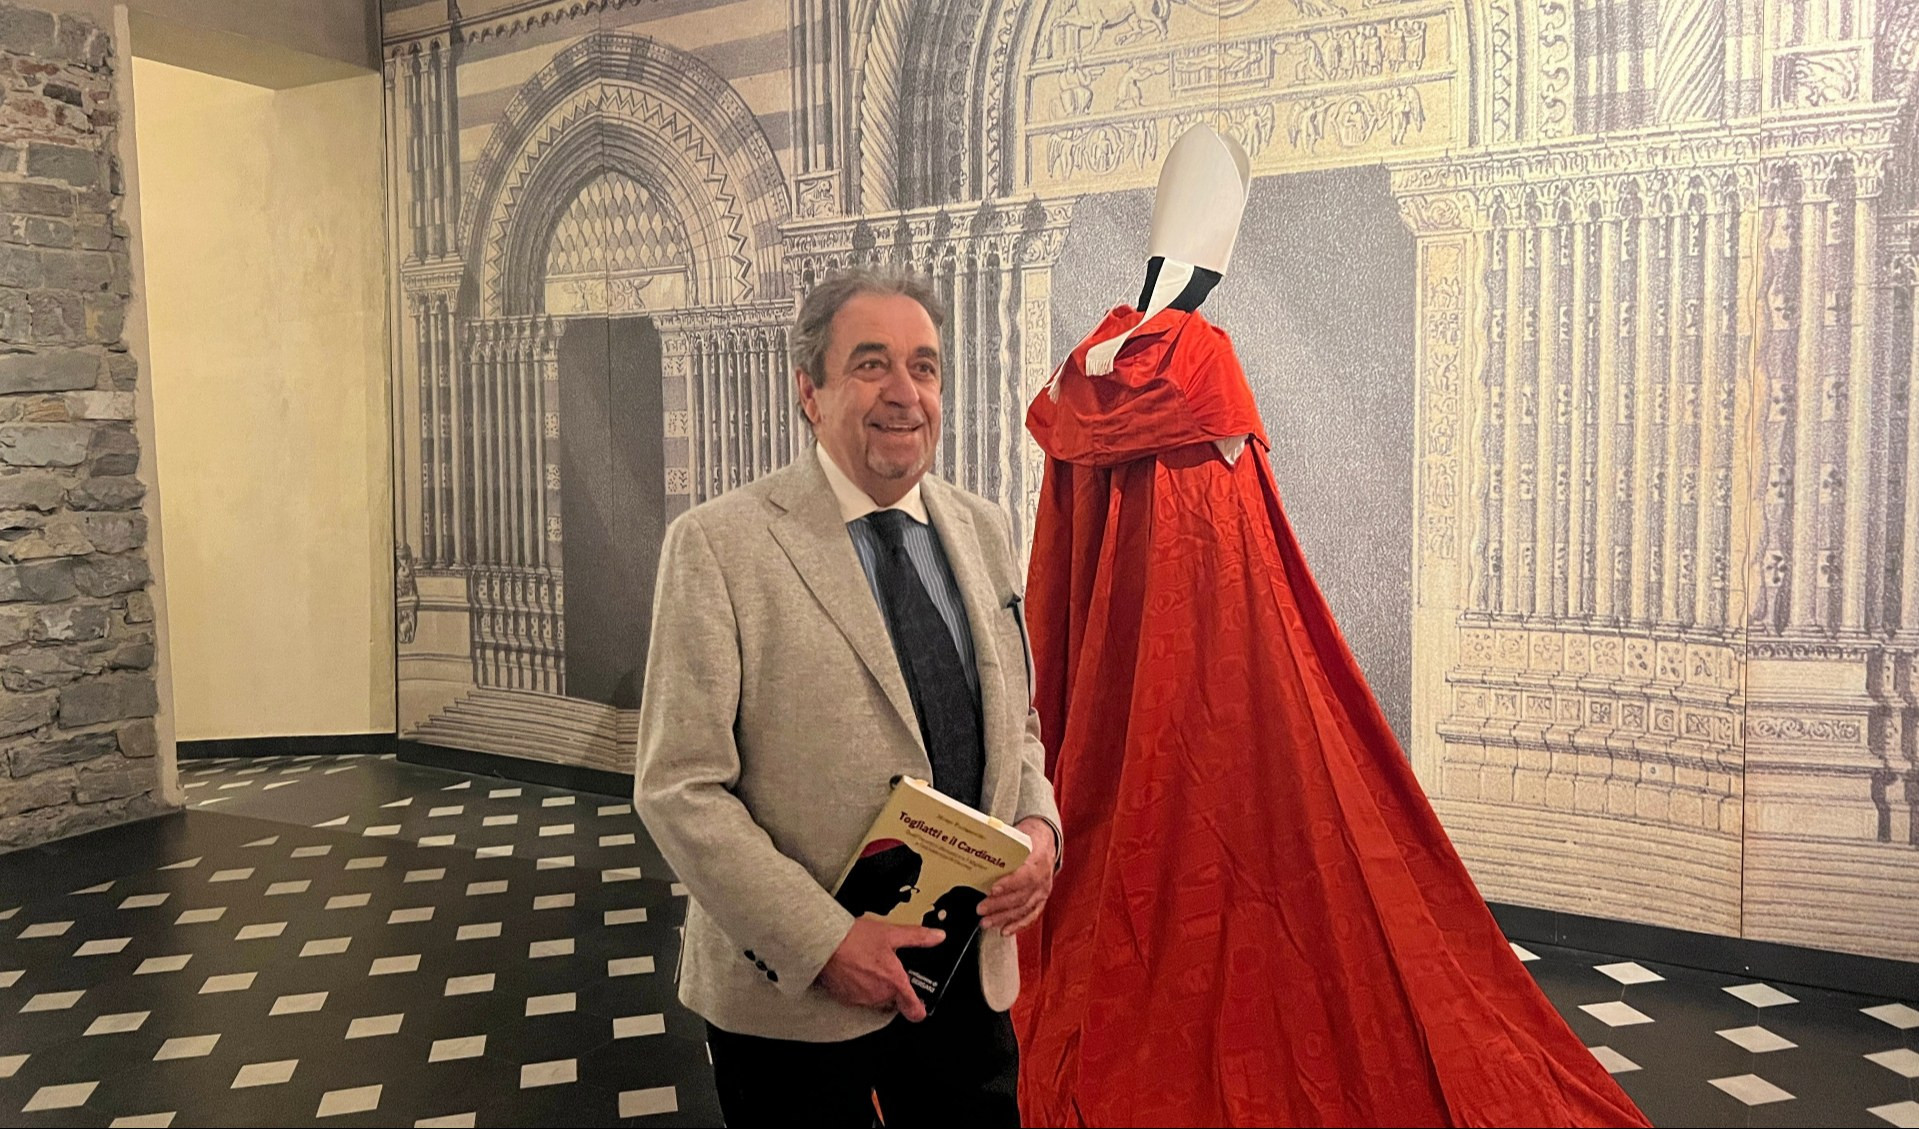 L'abito cardinalizio di Siri incontra l'epistolario 'immaginato' da Mario Paternostro con Togliatti